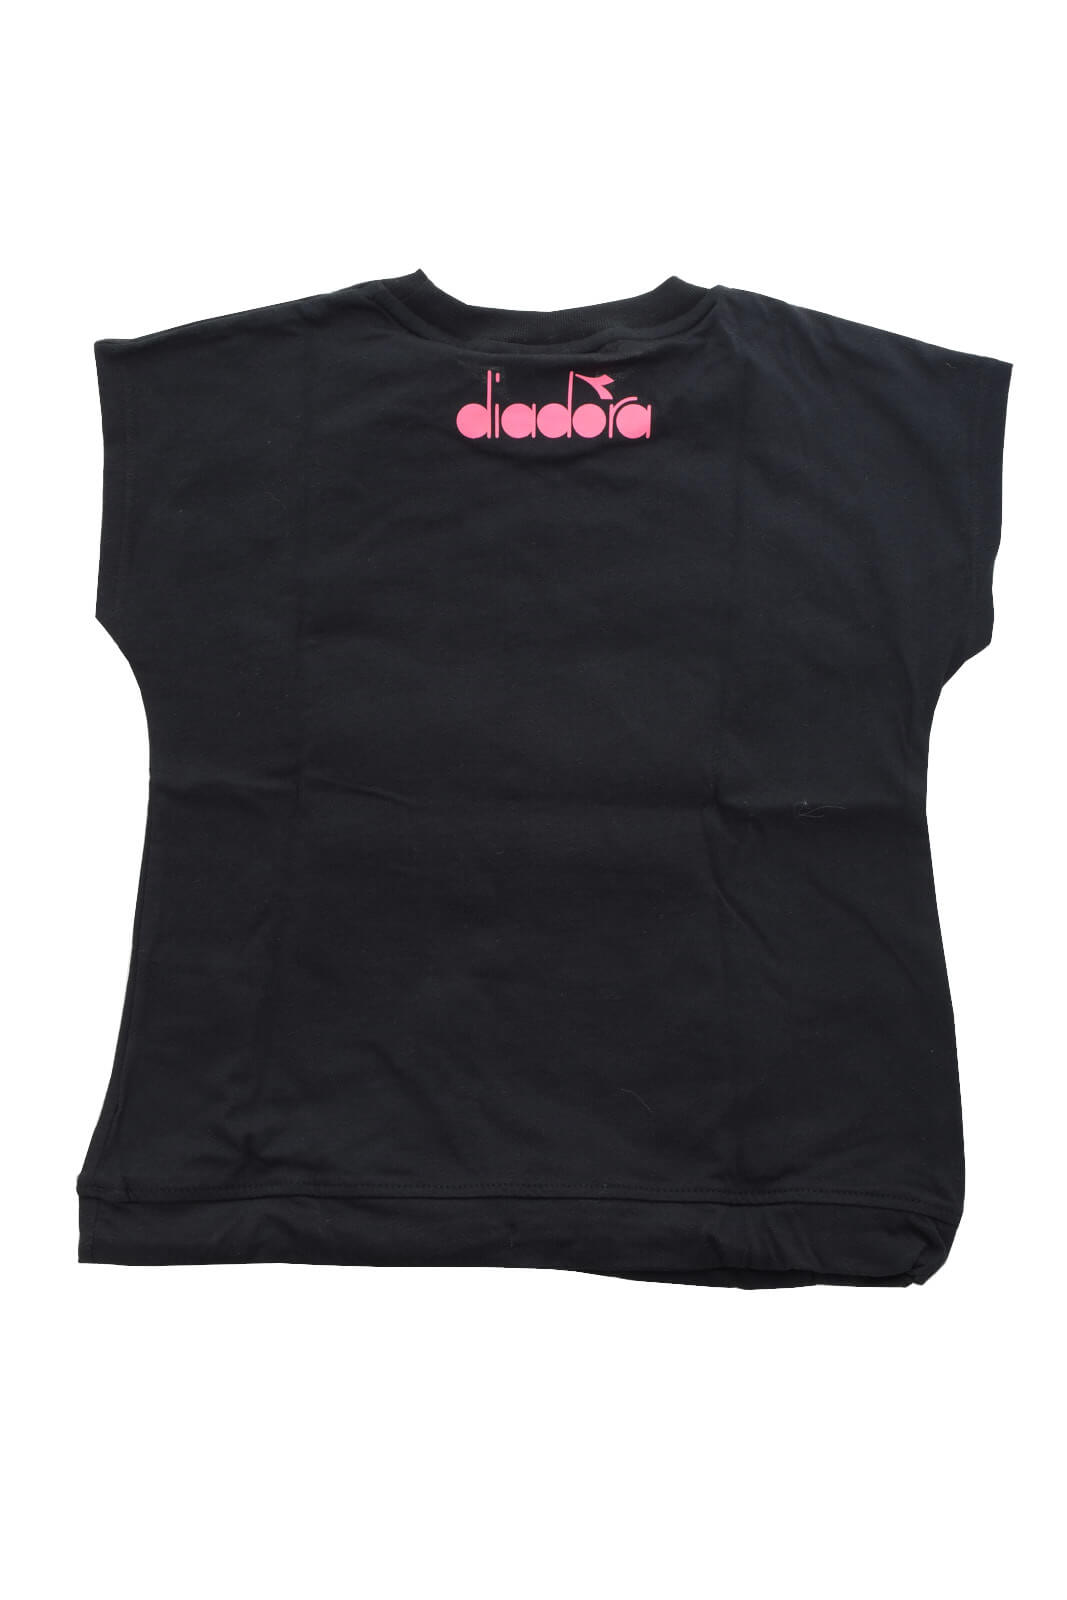 Diadora T shirt Bambina con stampa lettering